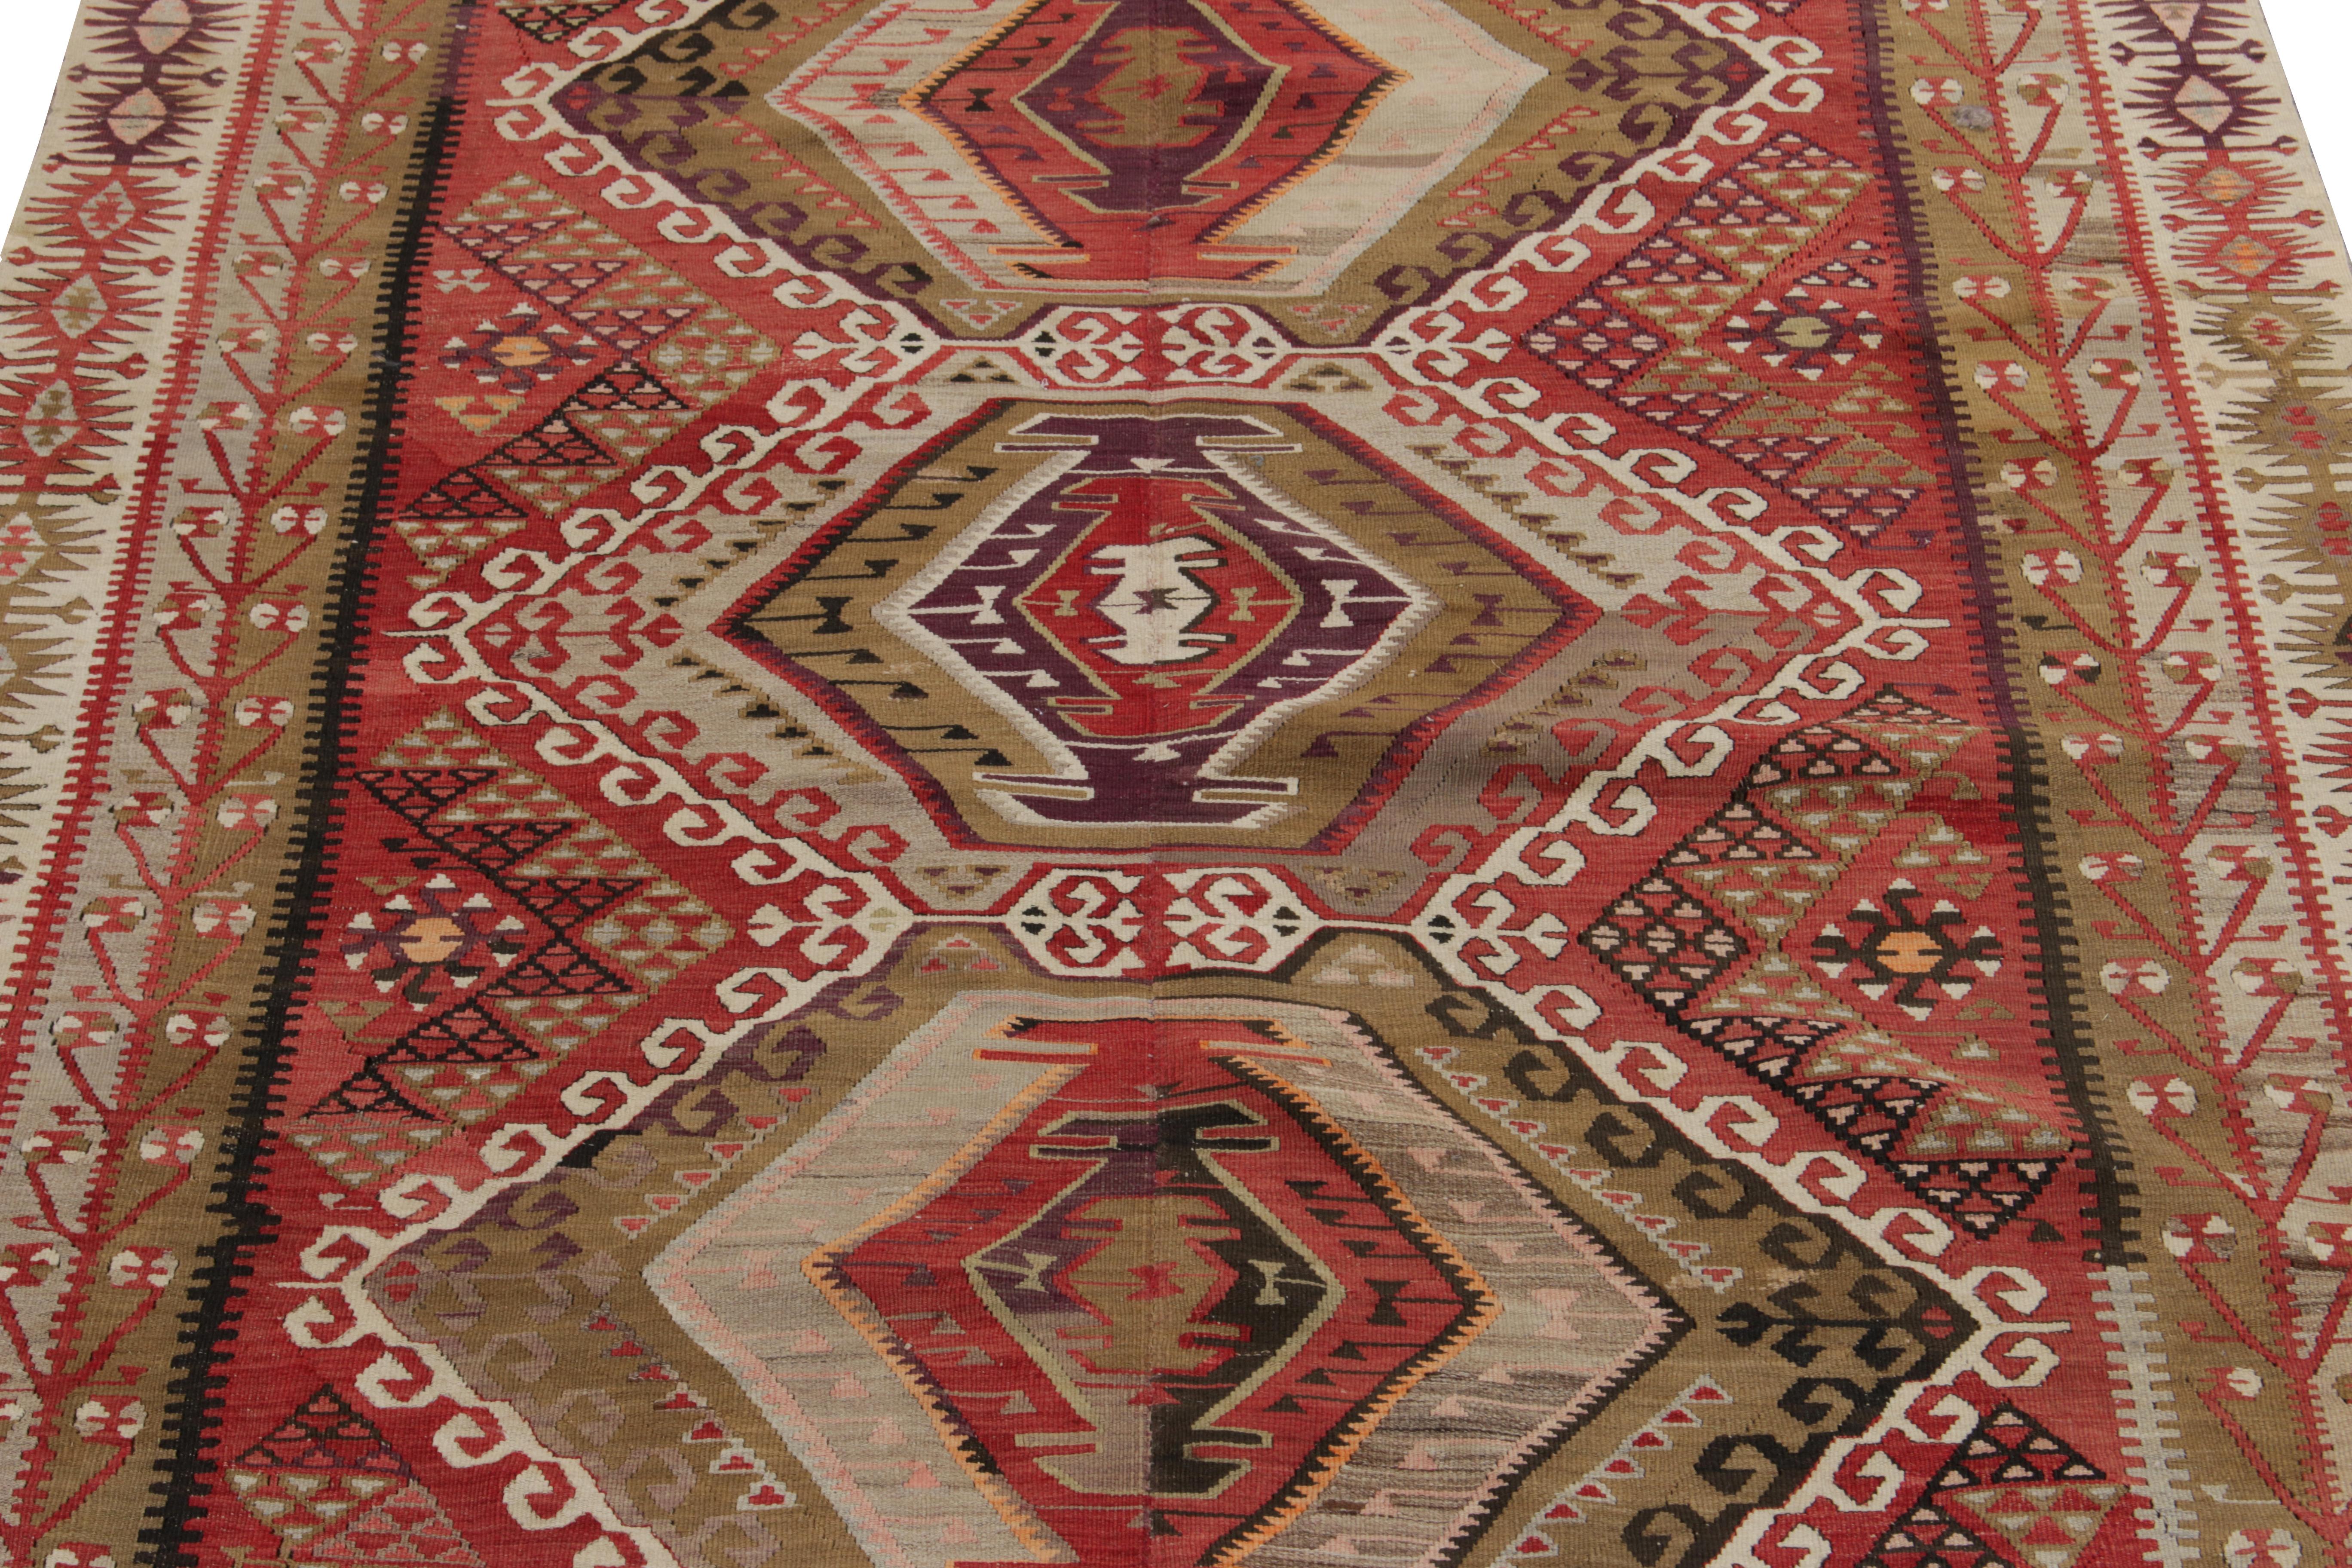 Tribal Vintage Kayseri Kilim Rug, Red, Beige-Brown Geometric Pattern by Rug & Kilim For Sale